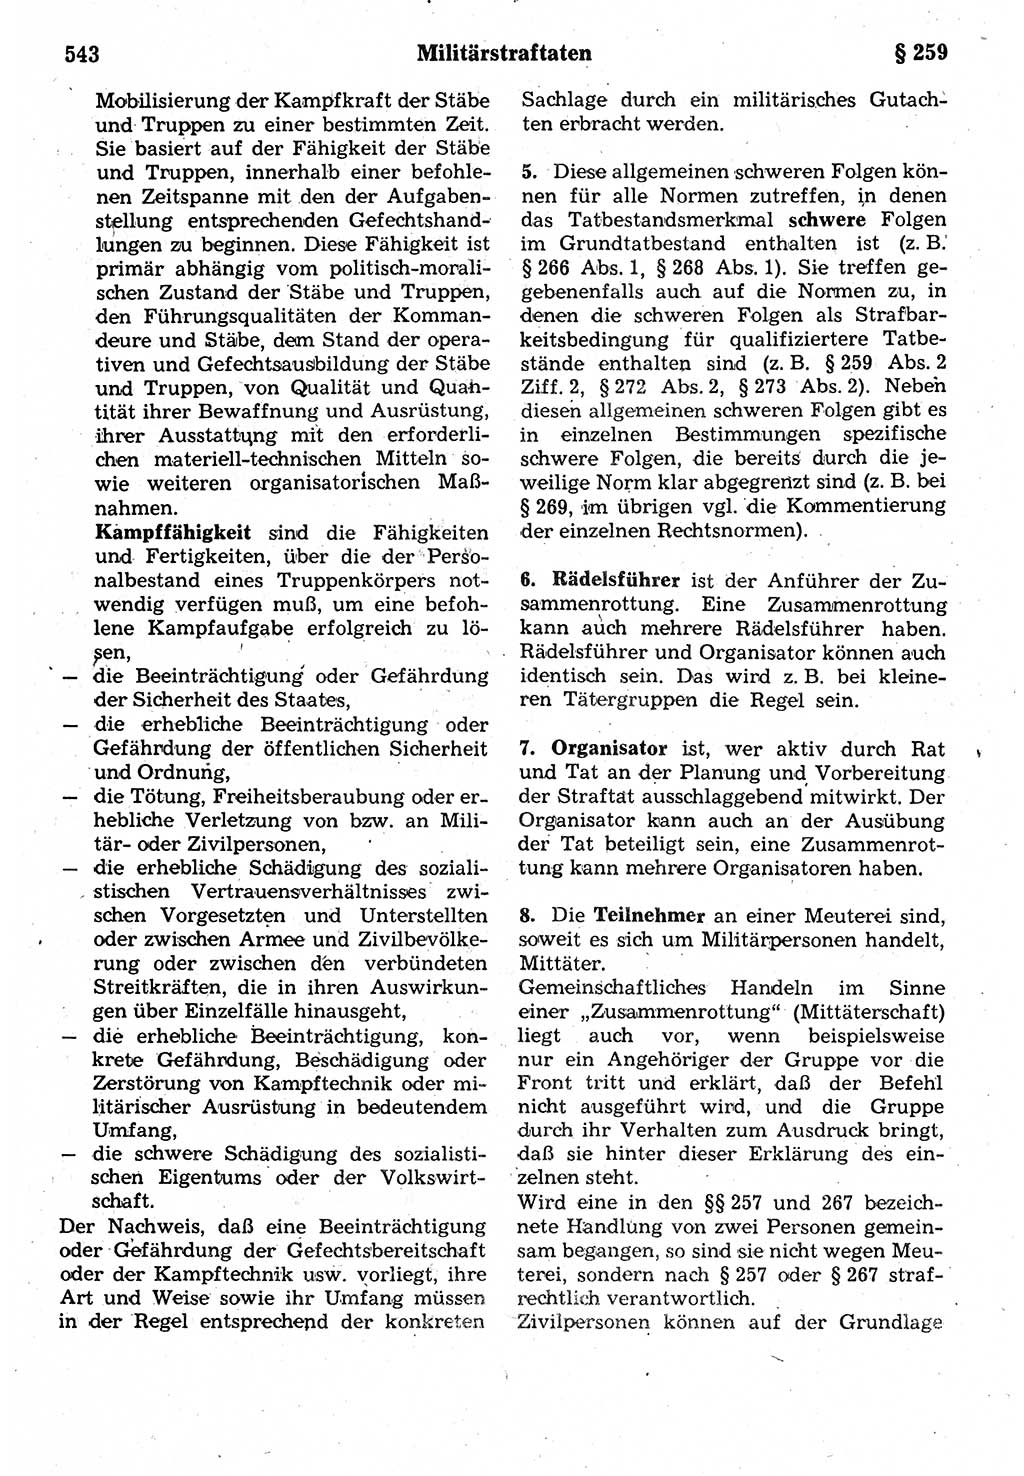 Strafrecht der Deutschen Demokratischen Republik (DDR), Kommentar zum Strafgesetzbuch (StGB) 1987, Seite 543 (Strafr. DDR Komm. StGB 1987, S. 543)